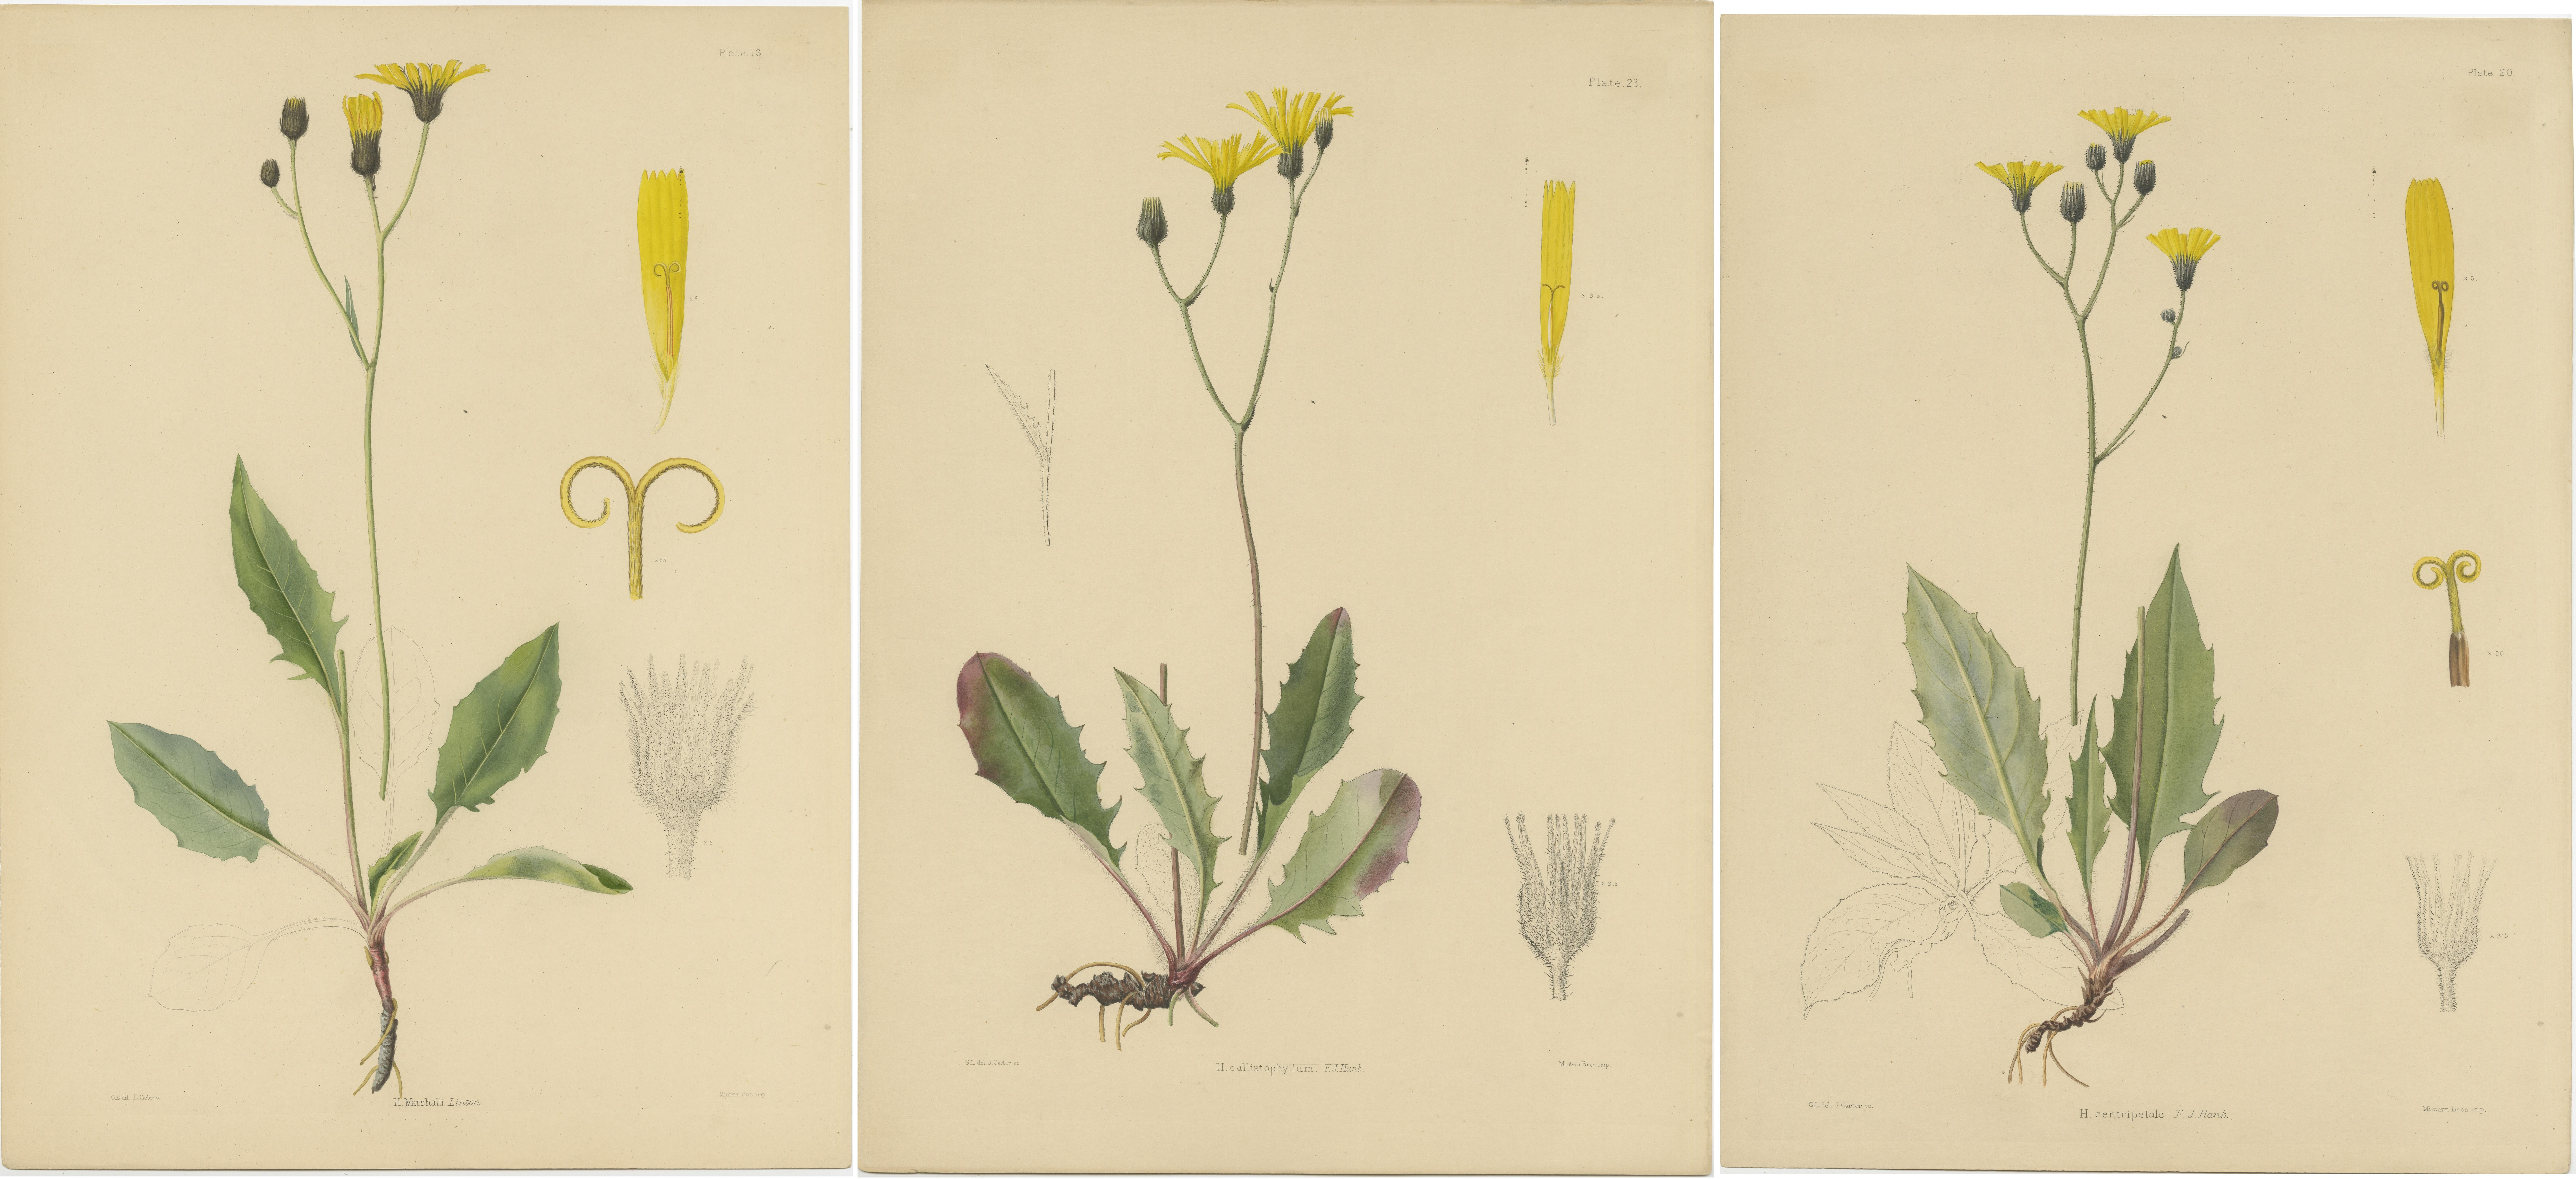 Satz von 3 antiken Botanikdrucken mit den Titeln 'H. Marshalli, H. callistophyllum, H. centripetale'. Sie zeigt drei Arten von Blütenpflanzen. Veröffentlicht nach Carter von Mintern Bros, ca. 1875.